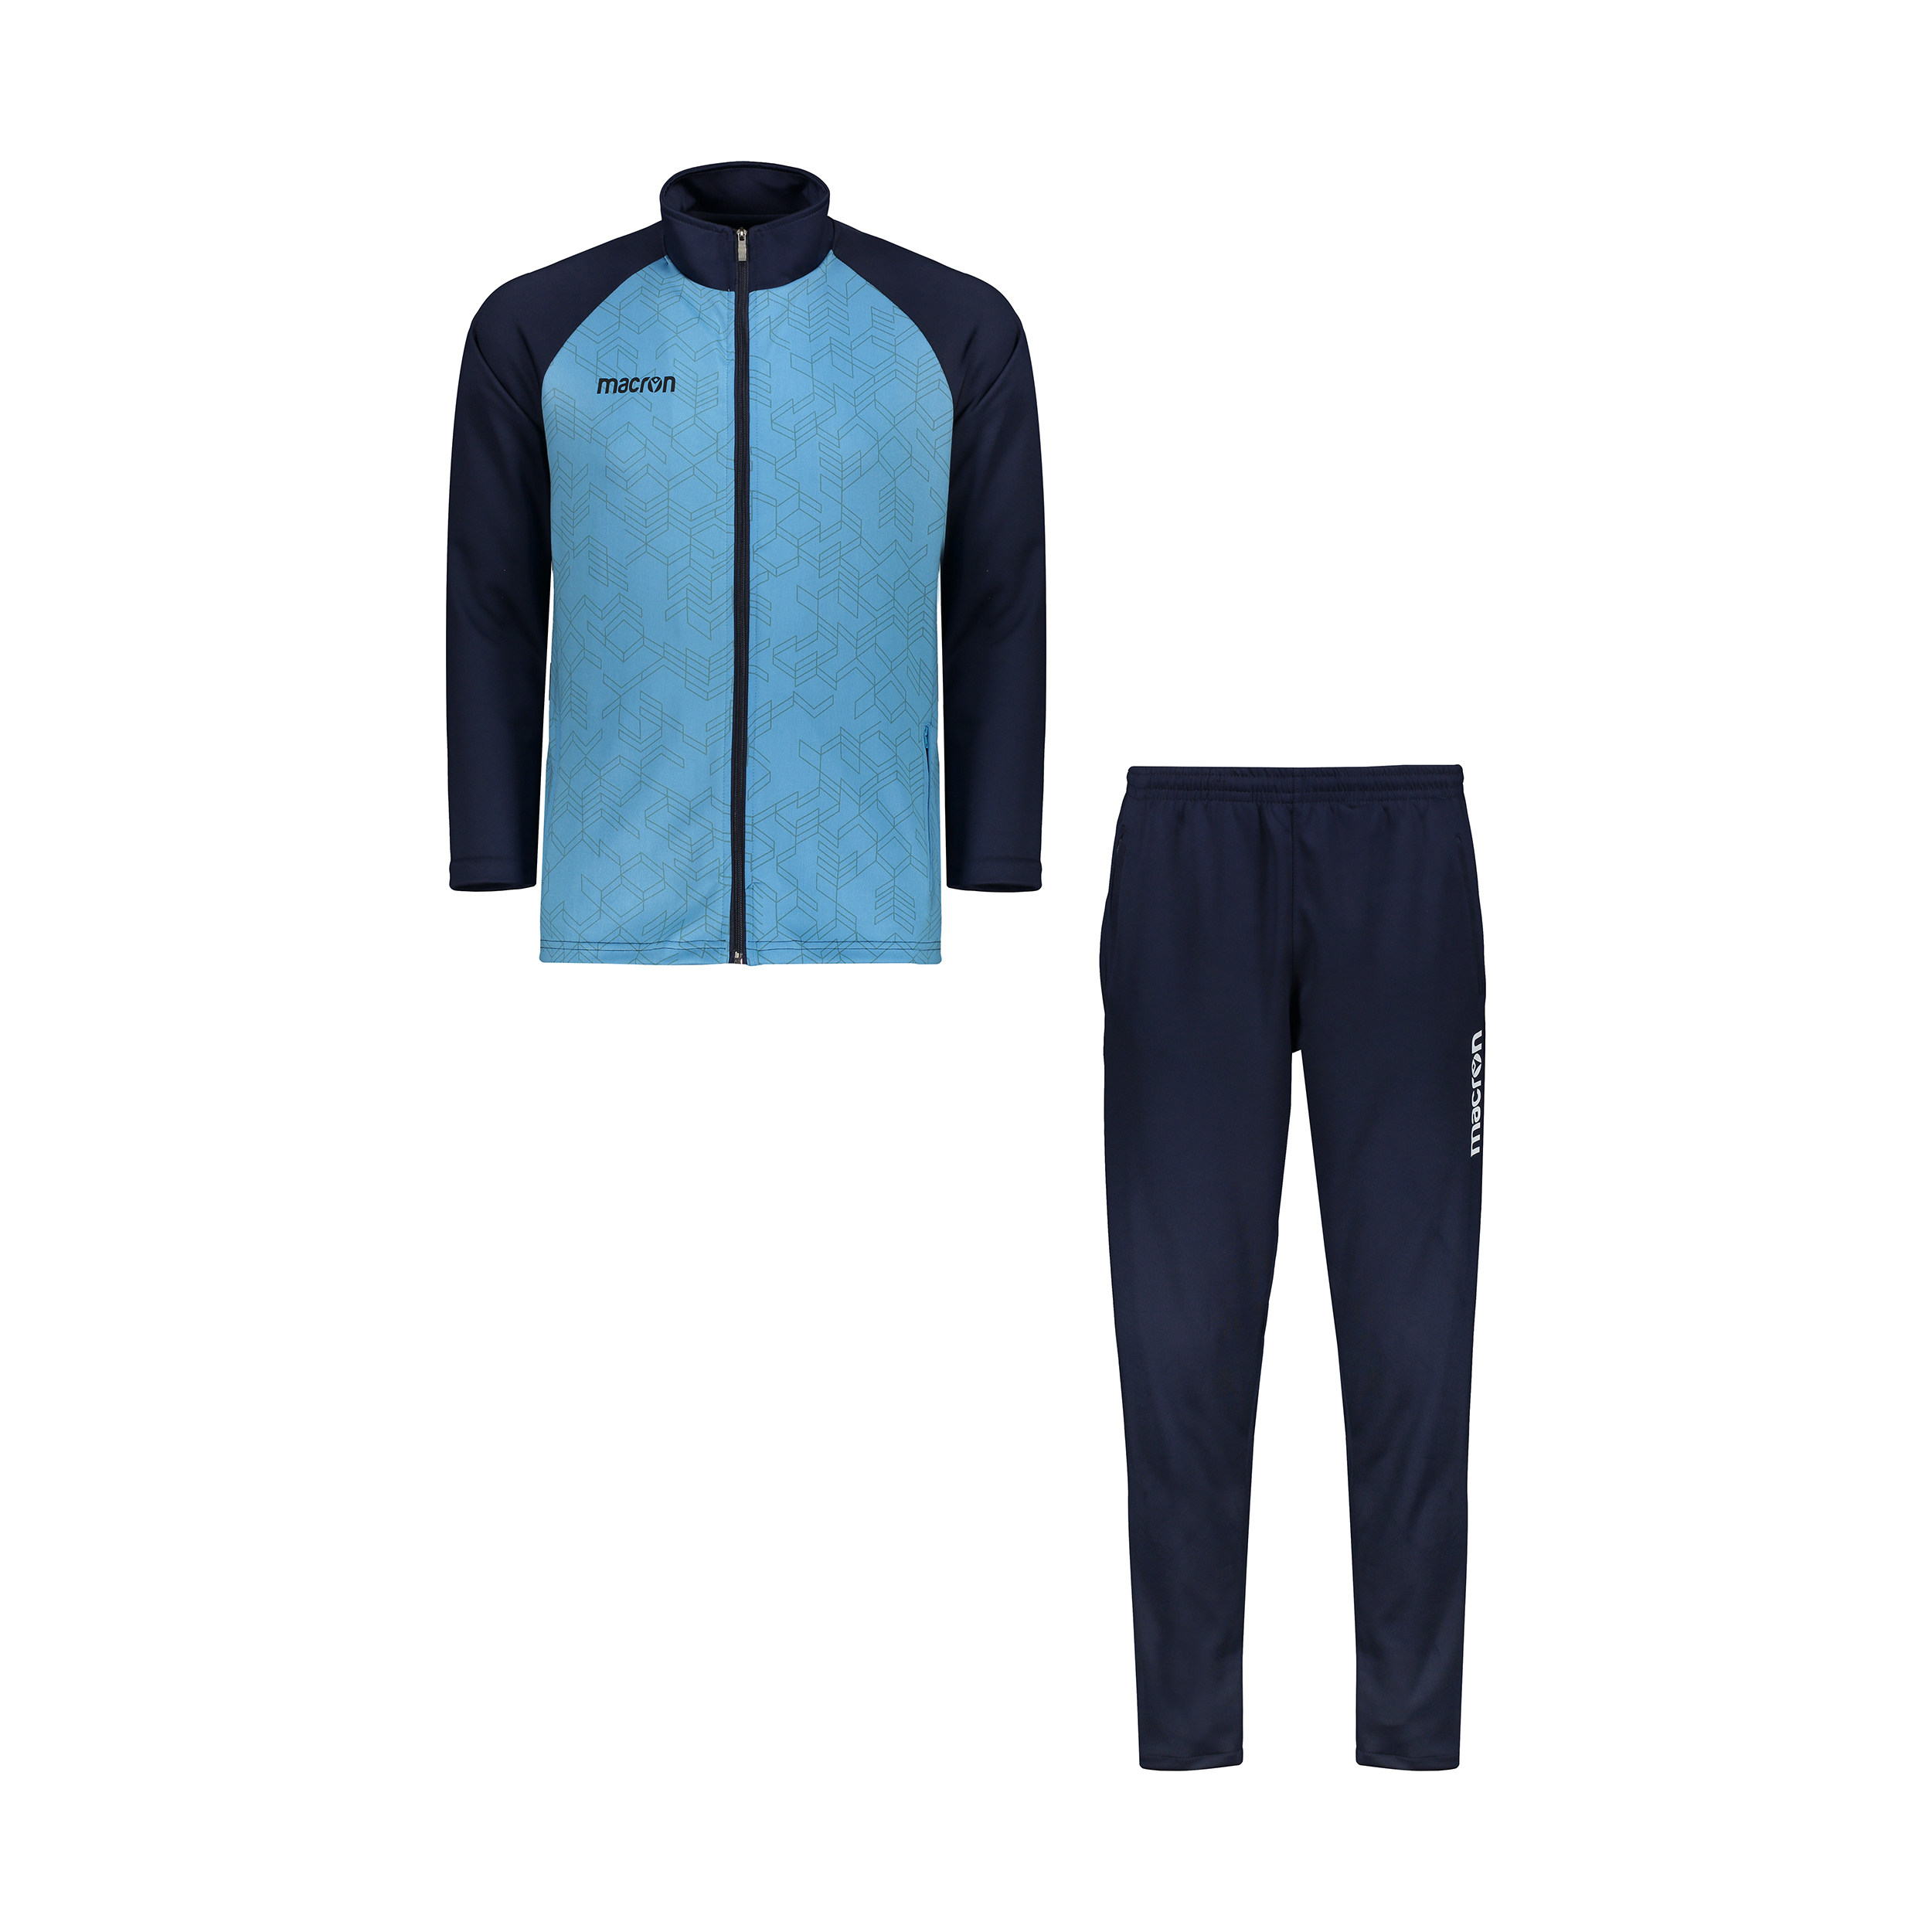 ست سویشرت و شلوار ورزشی مردانه مکرون مدل توتی رنگ آبی 4203008